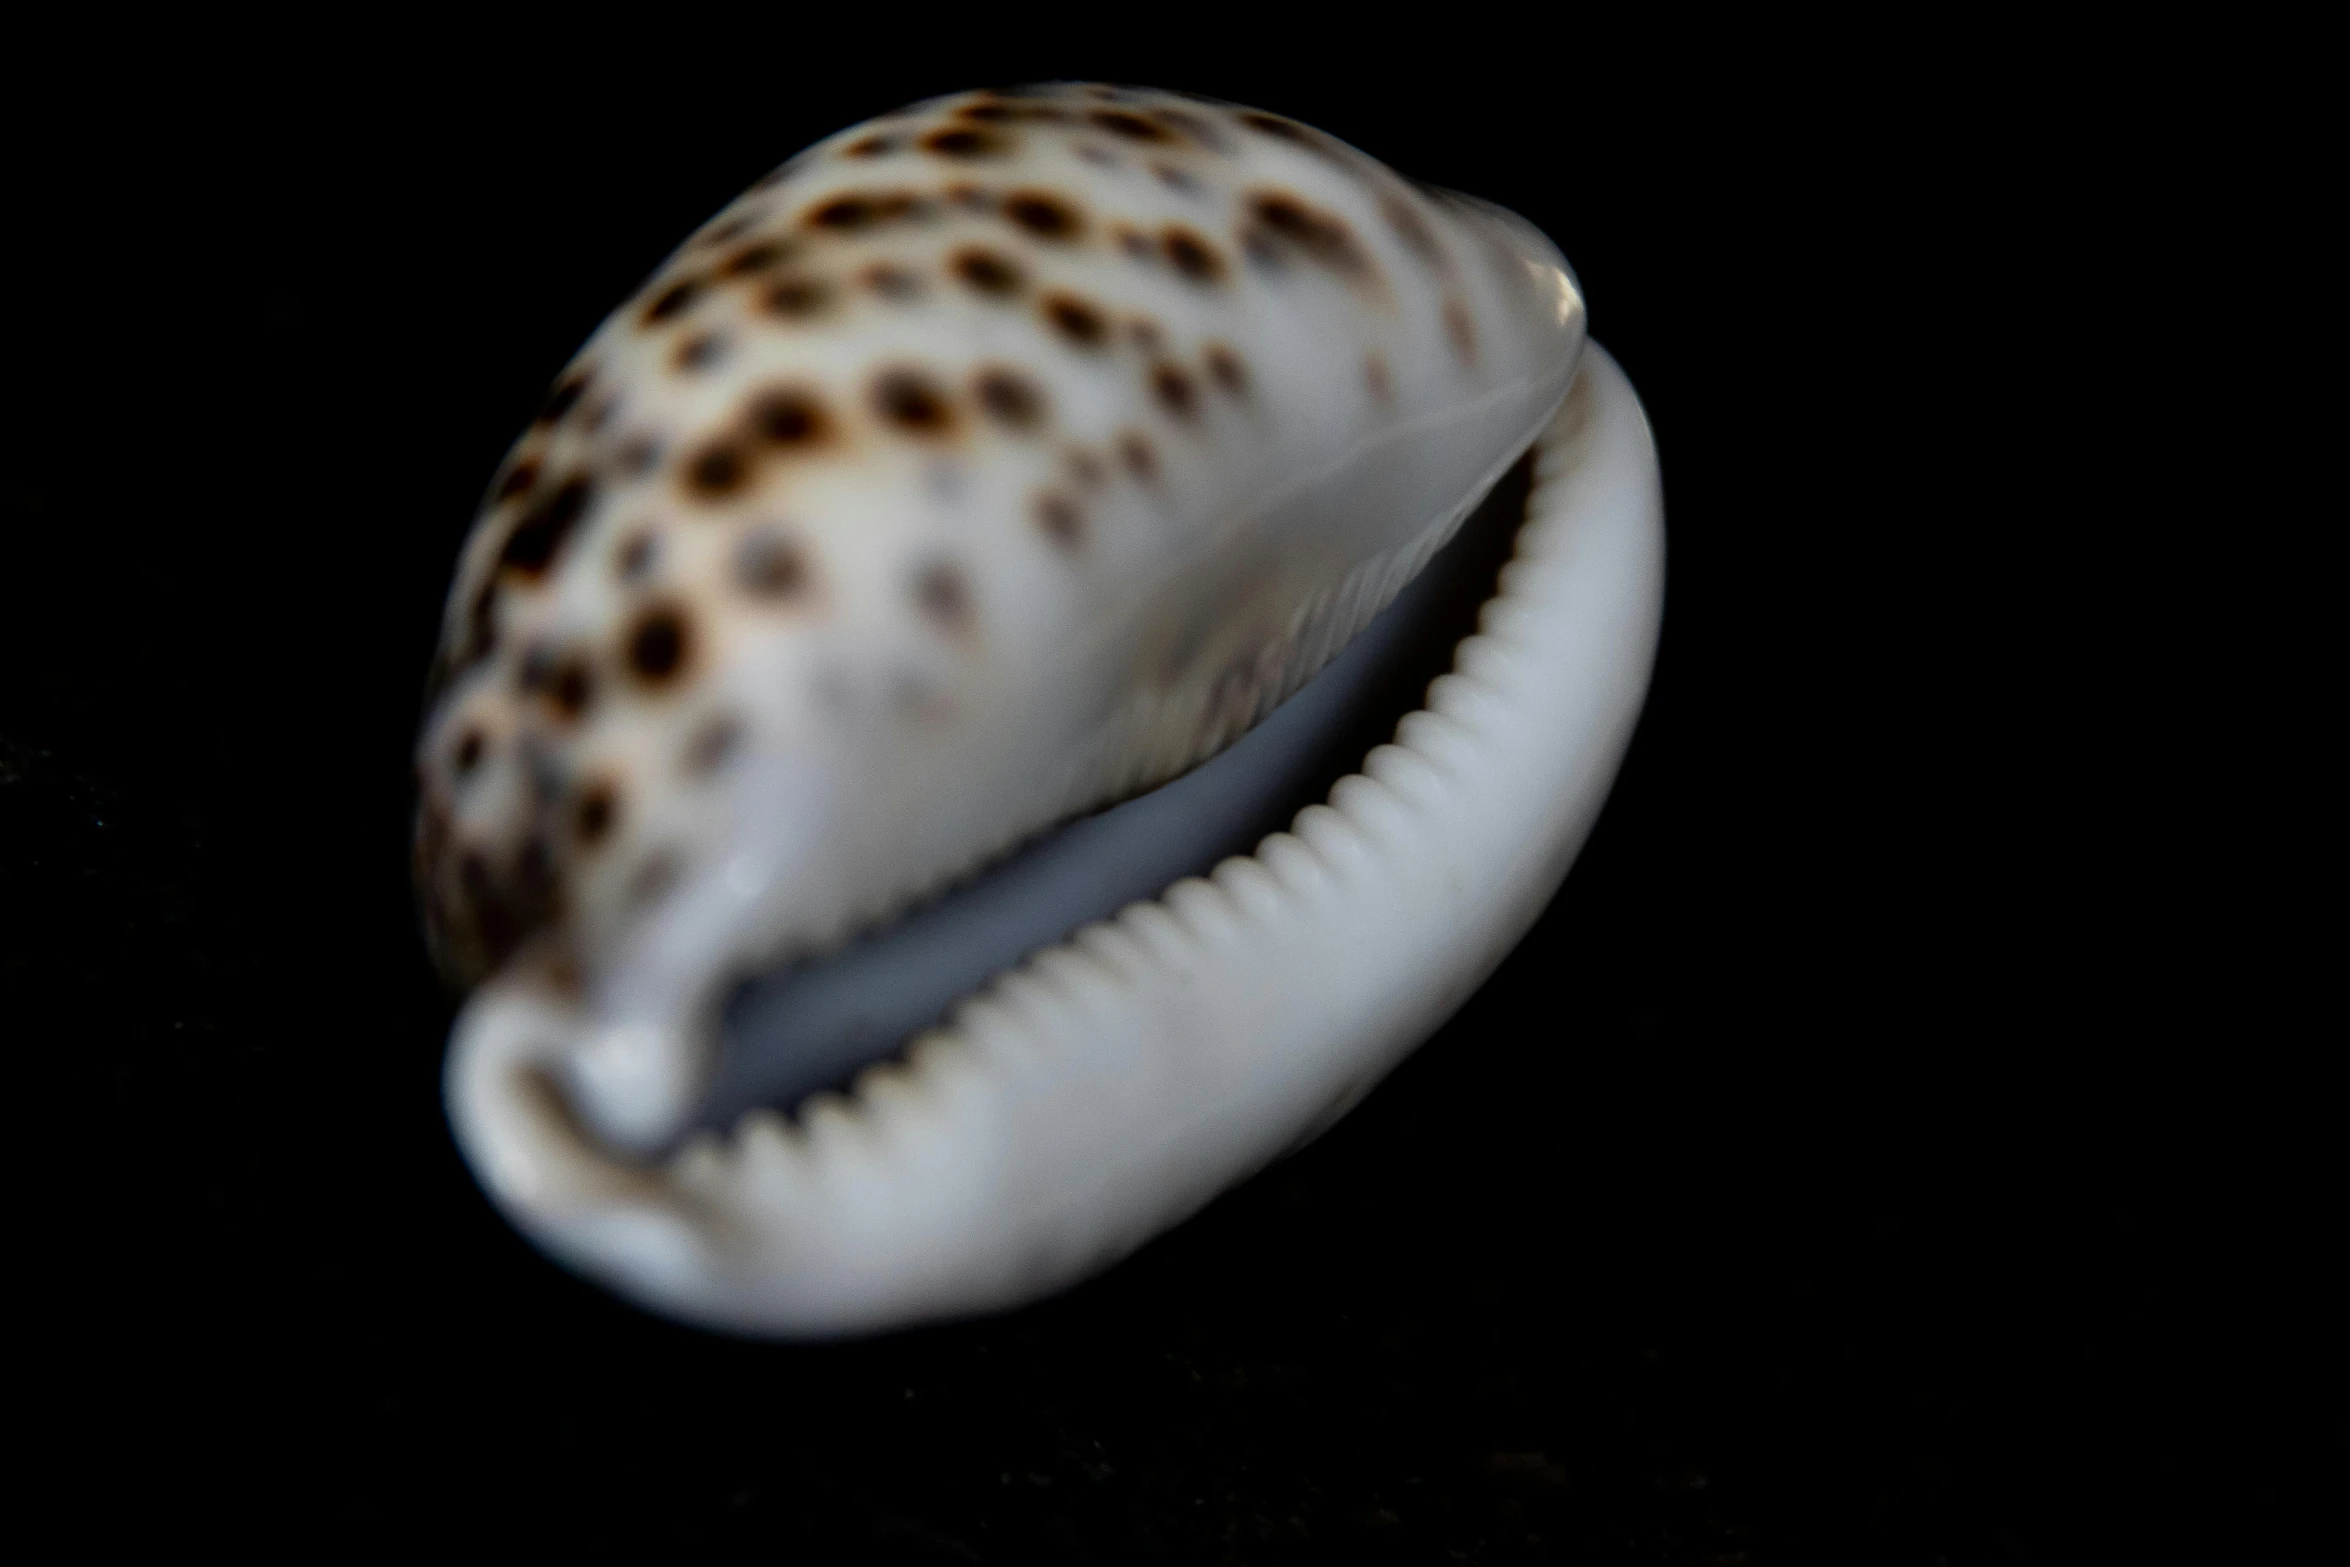 a sea snail is seen in a dark po